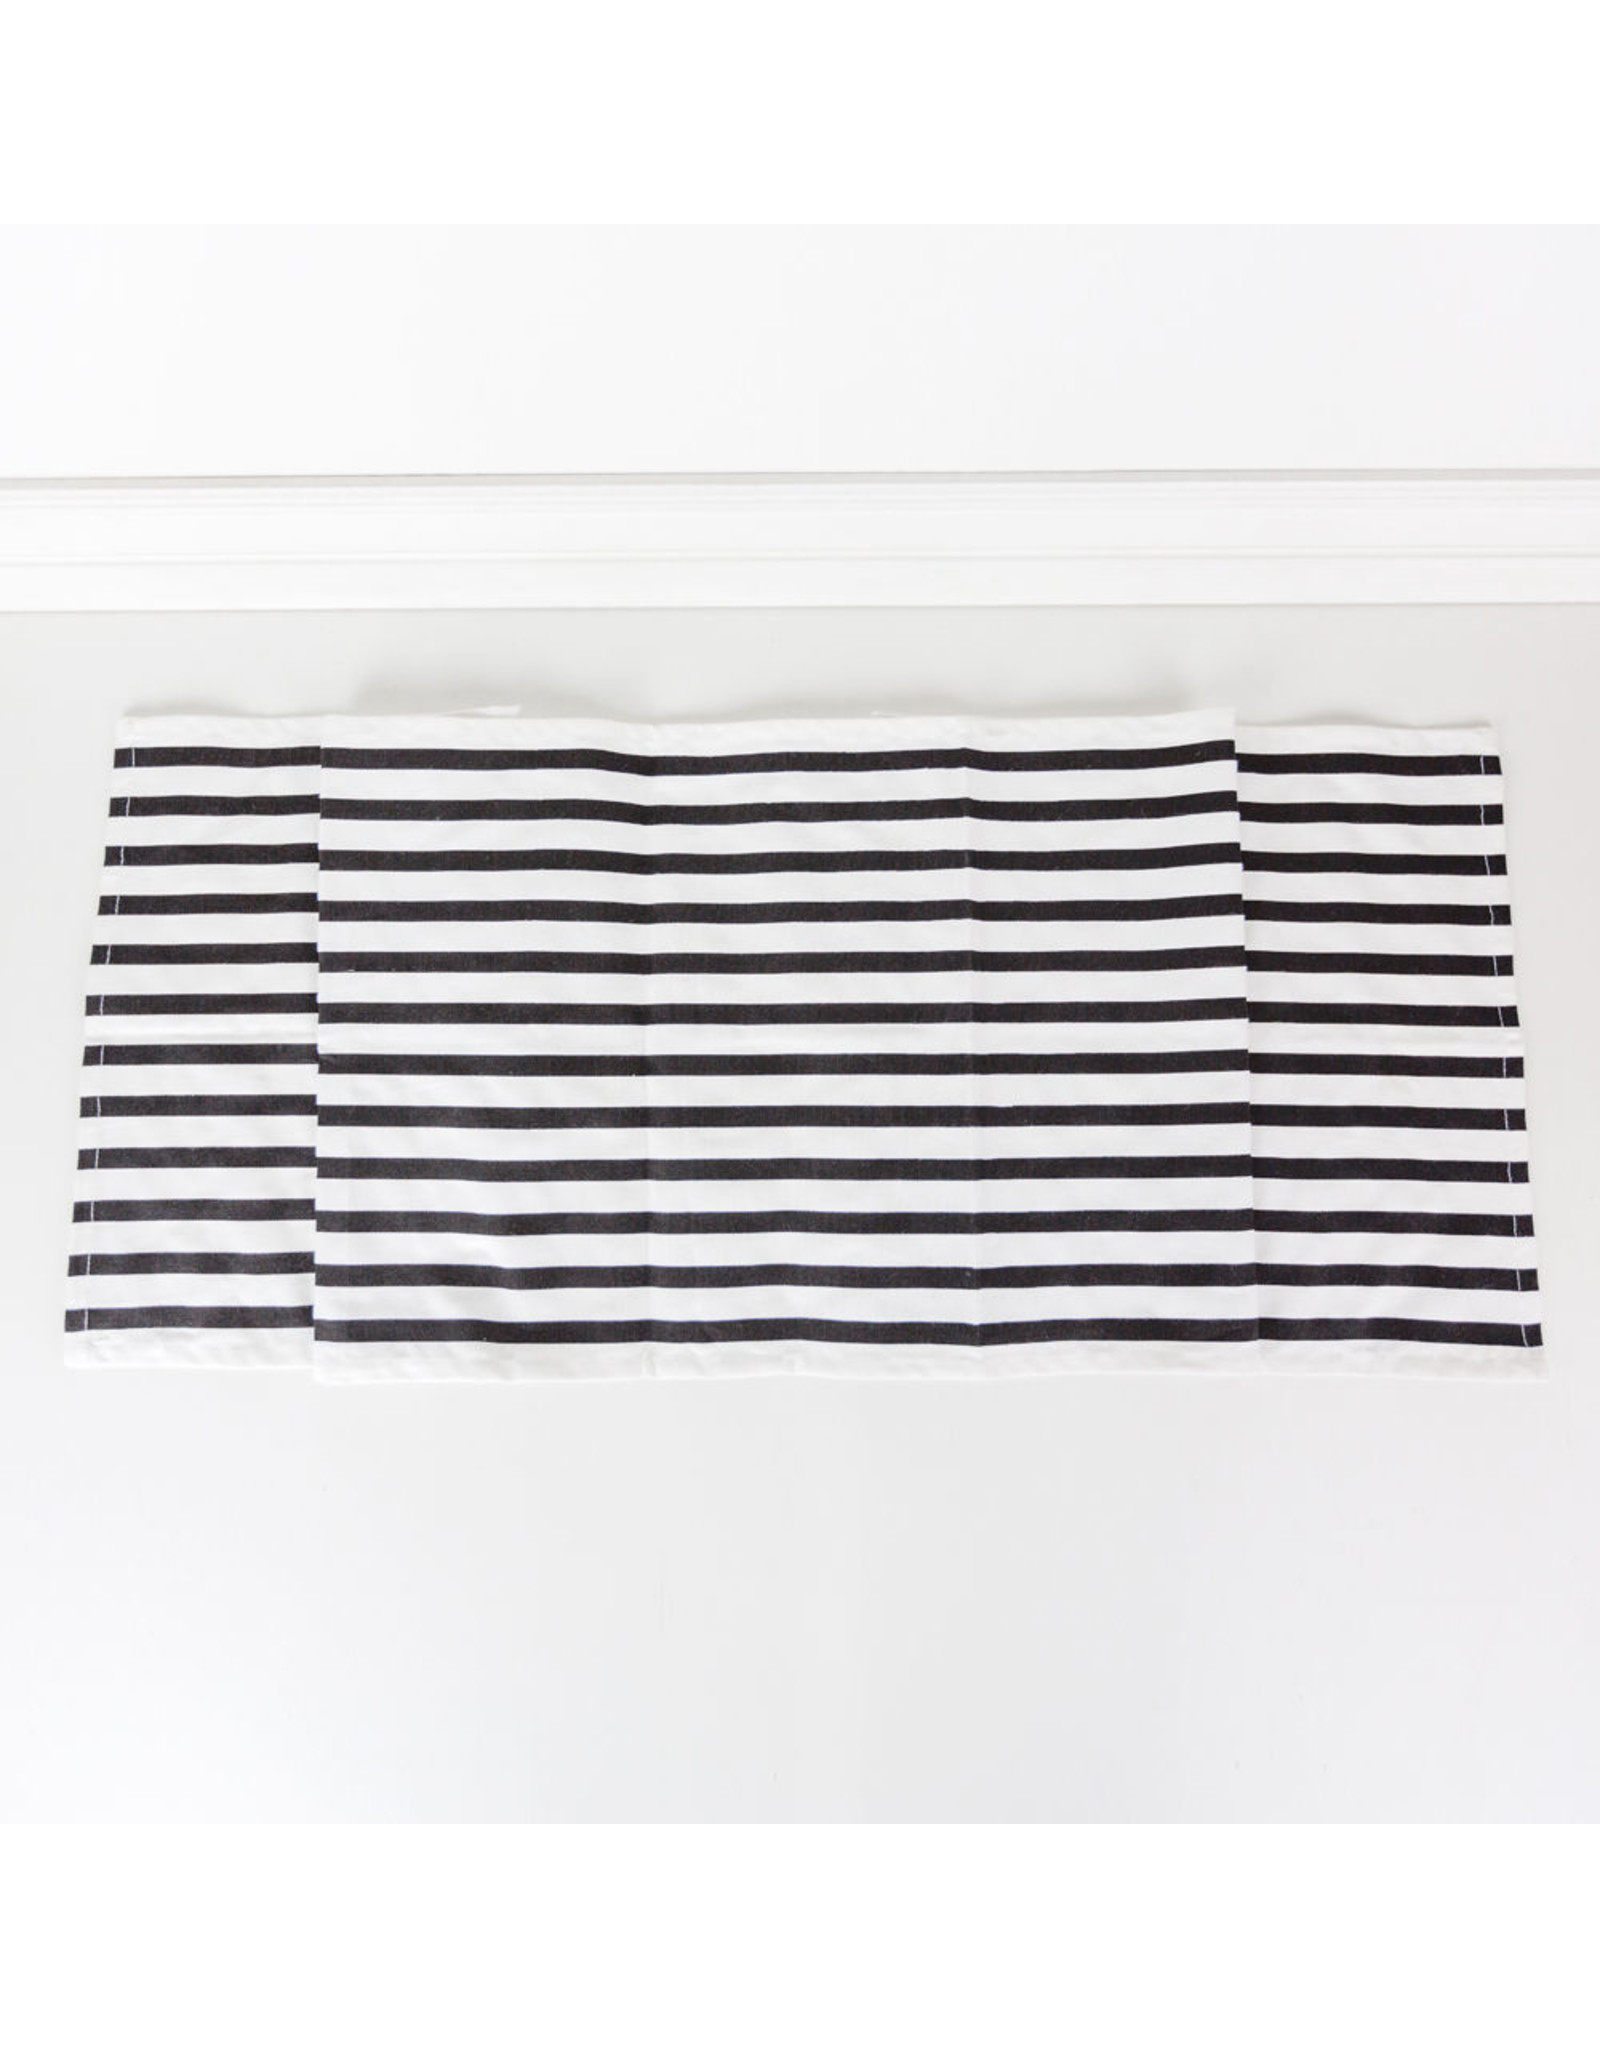 Adams & Co. 15" X 65" Table Runner (Stripes), White/Black